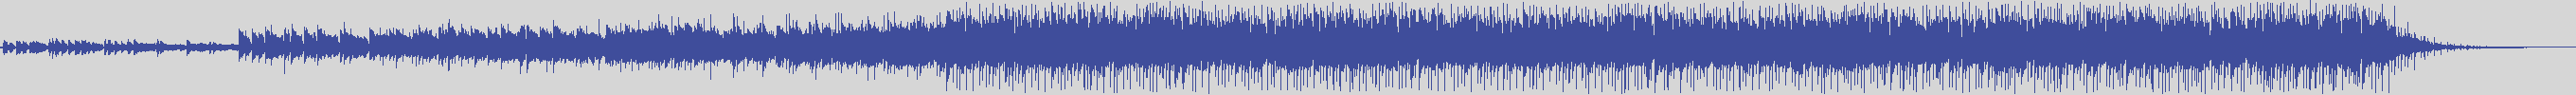 noclouds_chillout [NOC010] Allevi - Mystic Mantra [Original Mix] audio wave form